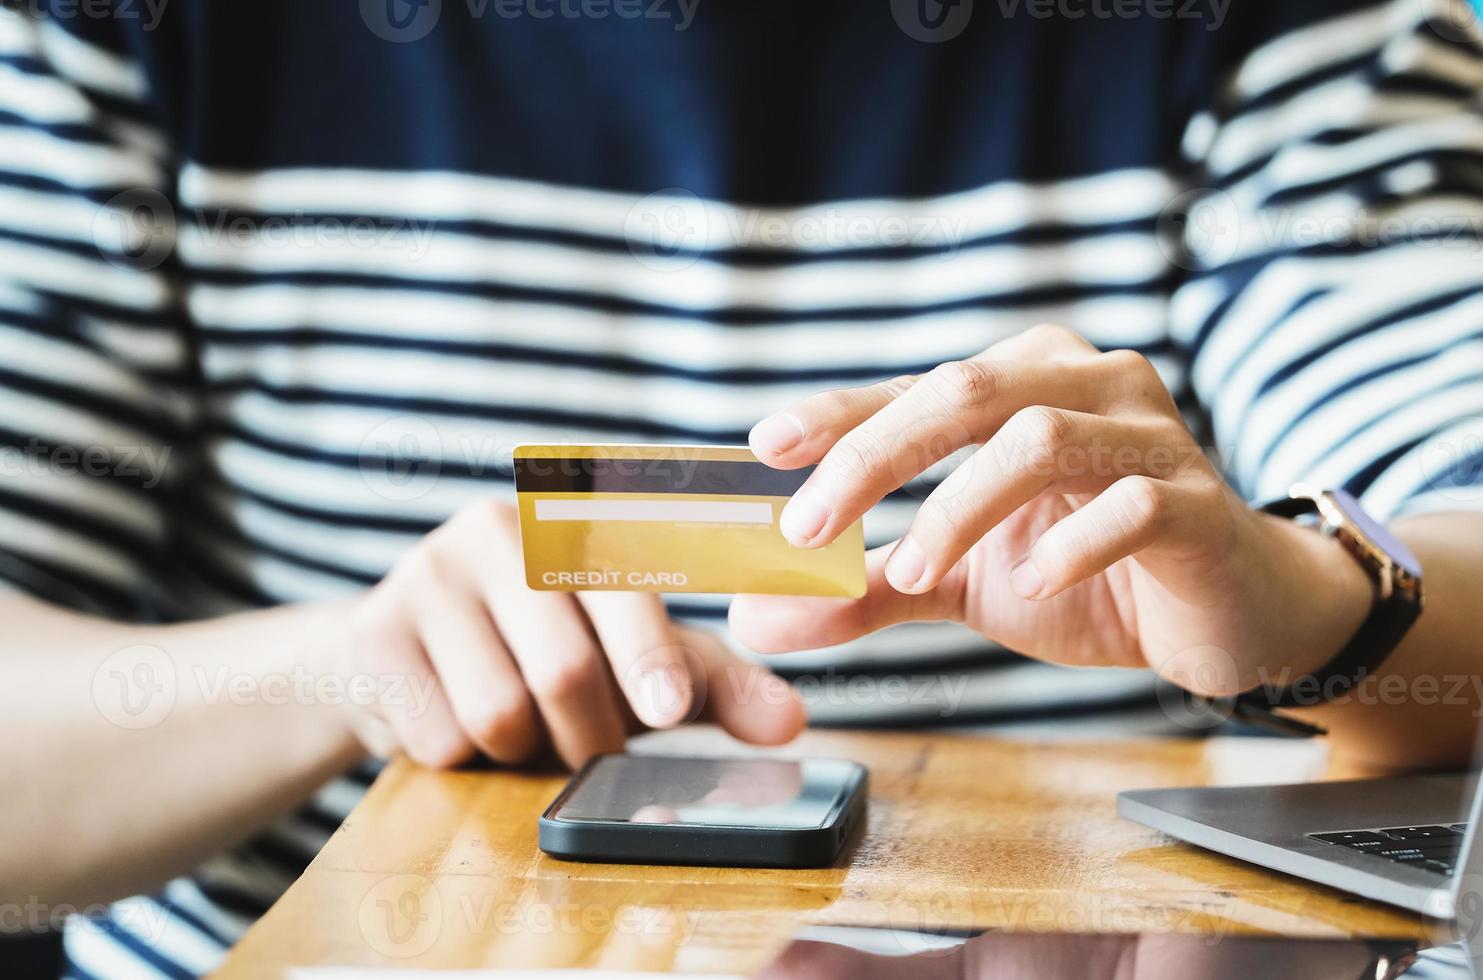 betala online med handen som håller ett kreditkort och använder en smartphone foto